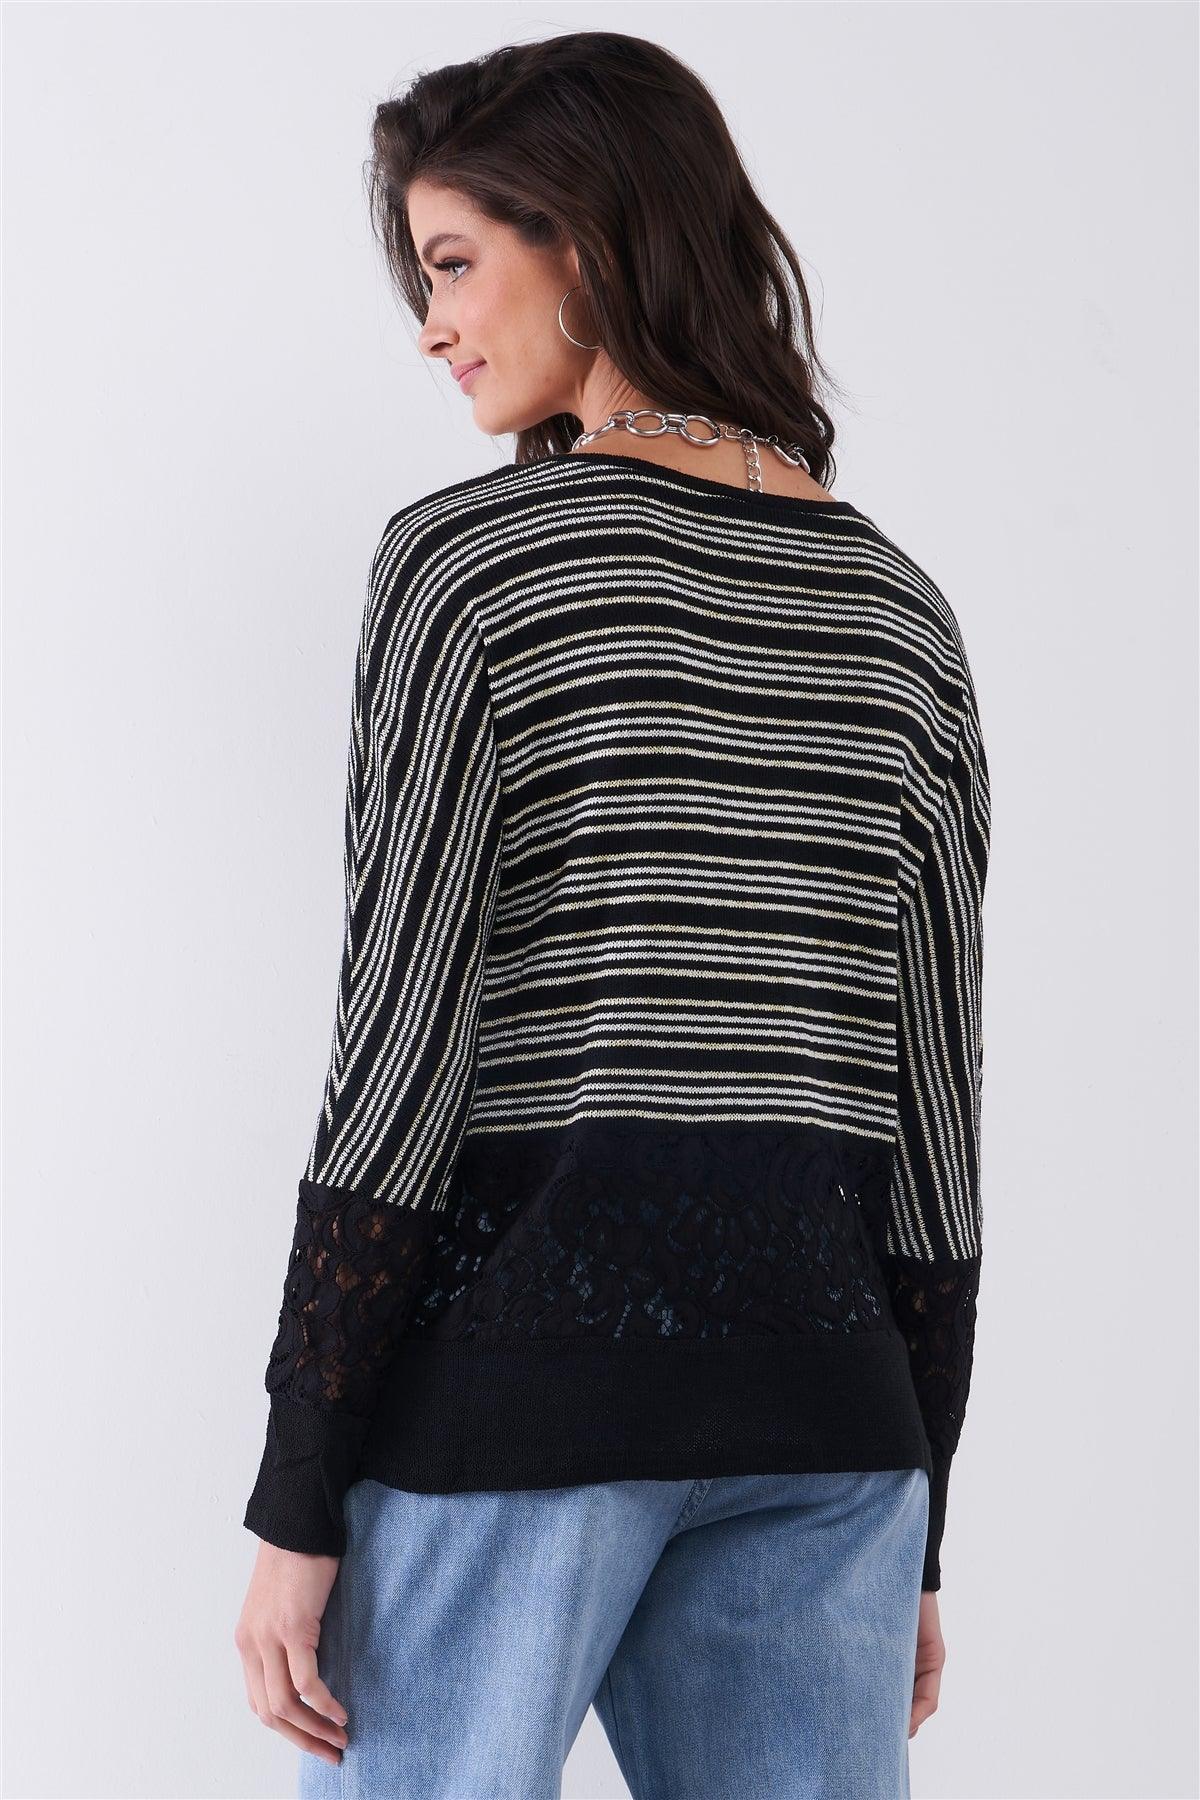 Black Striped Glitter Weave Crochet Trim Detail Long Sleeve Sweater Top /1-1-2-1